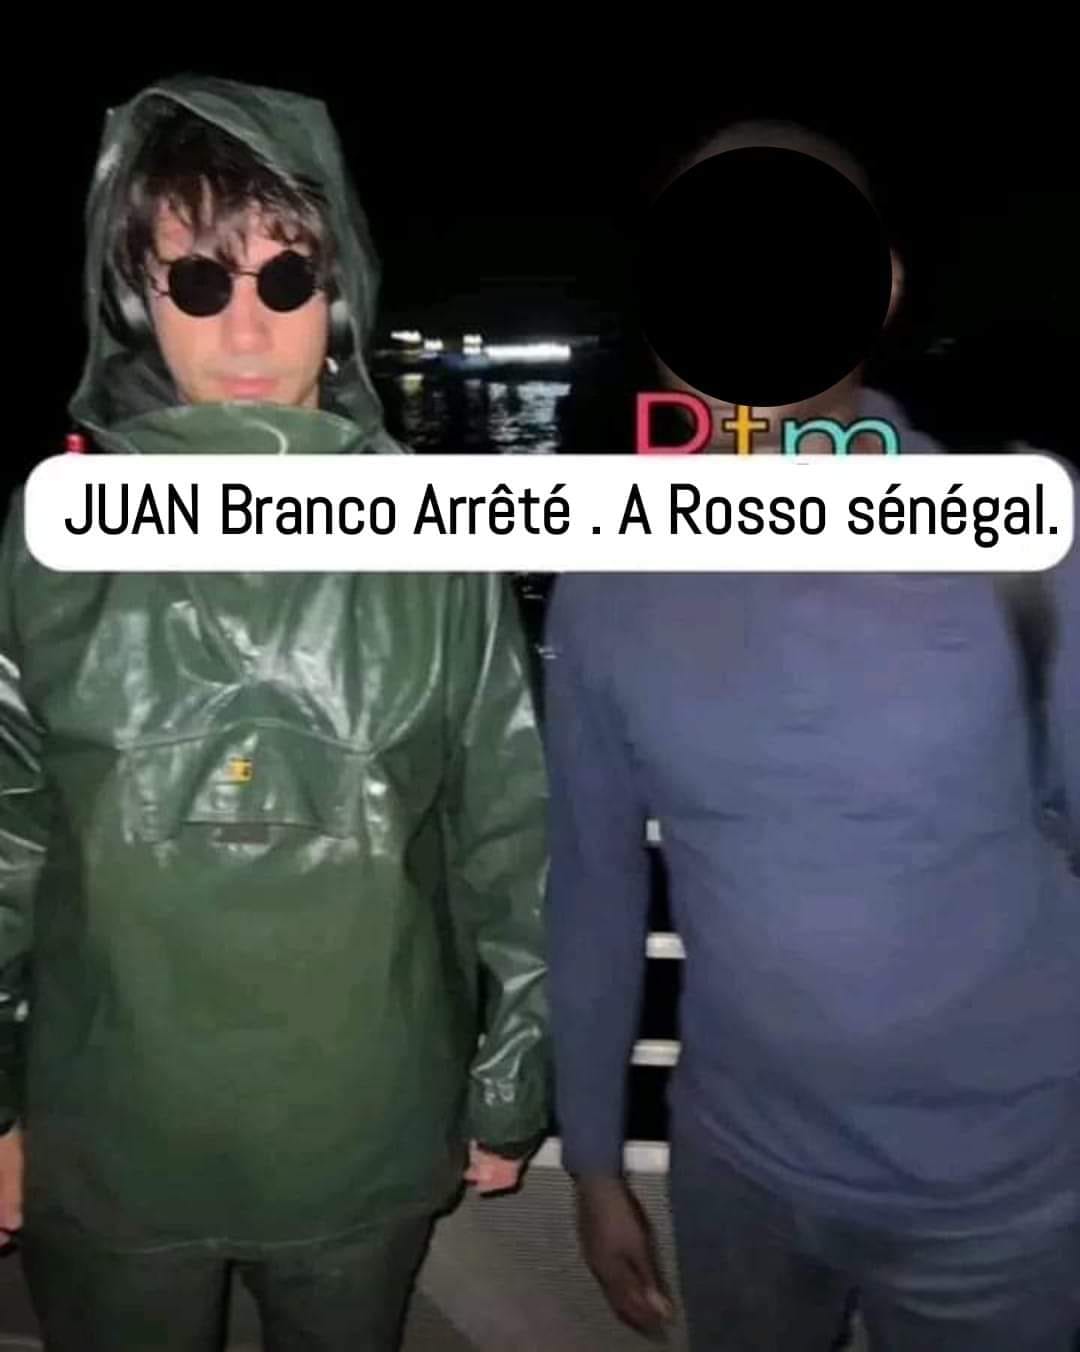 Juan Branco arrêté à Rosso